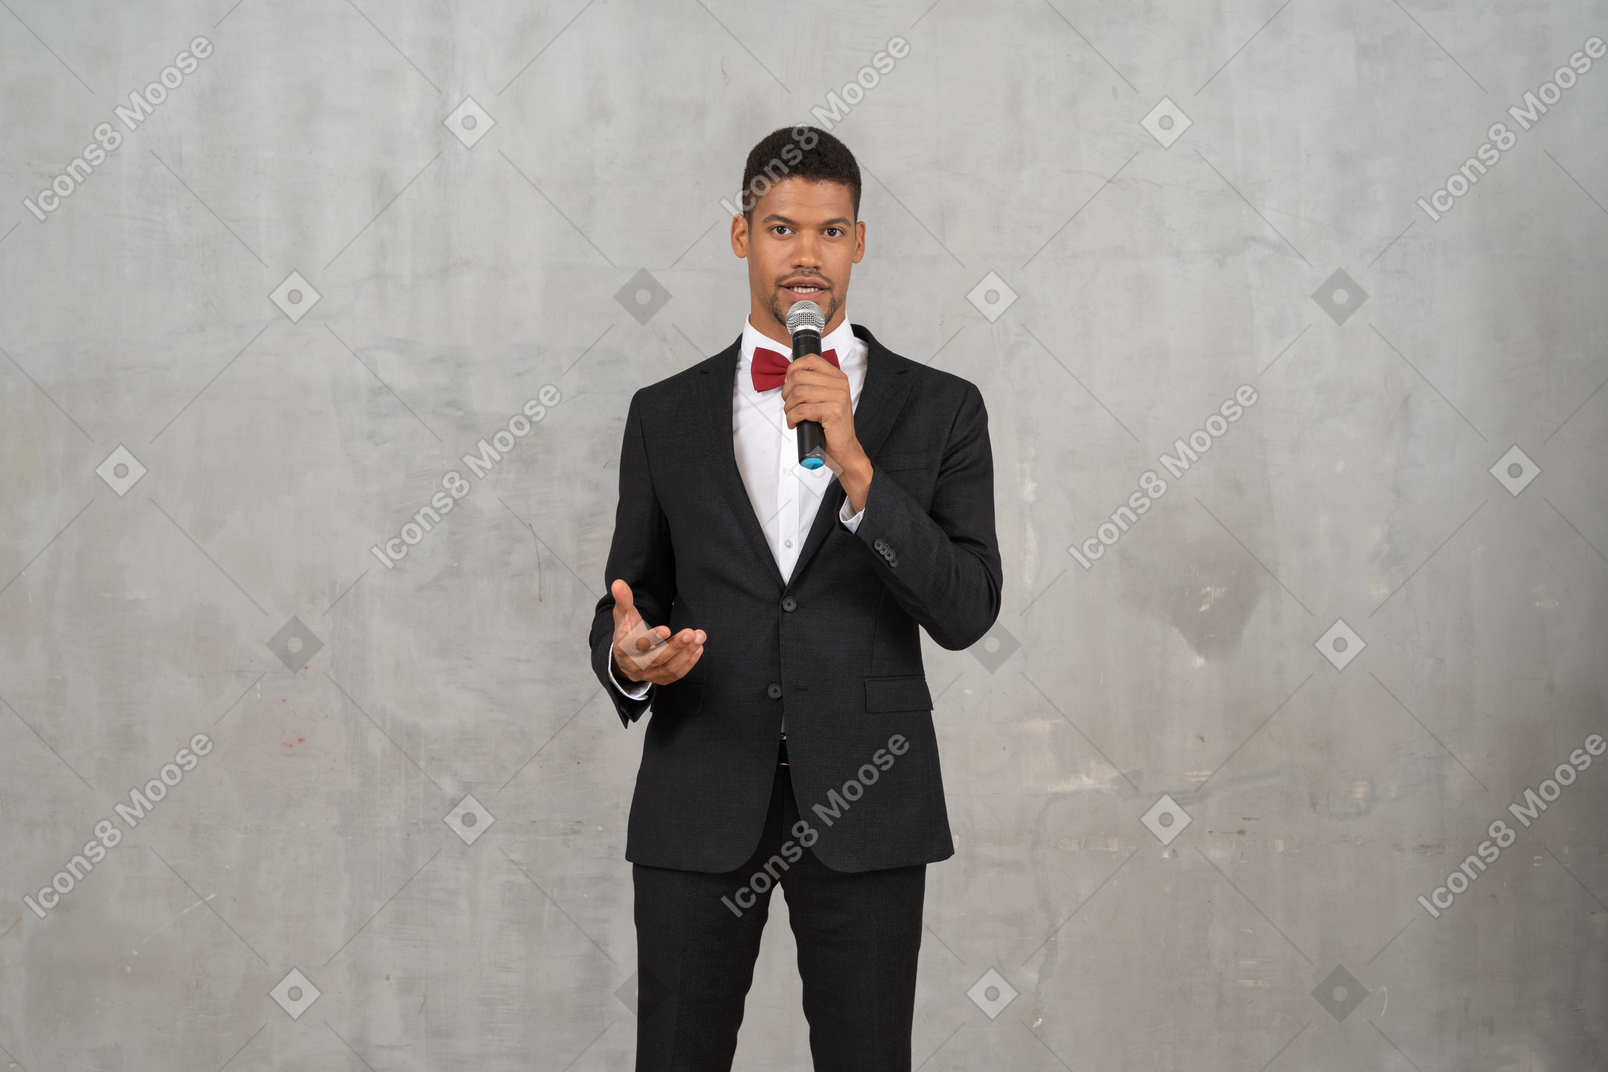 Mann im schwarzen anzug spricht ins mikrofon